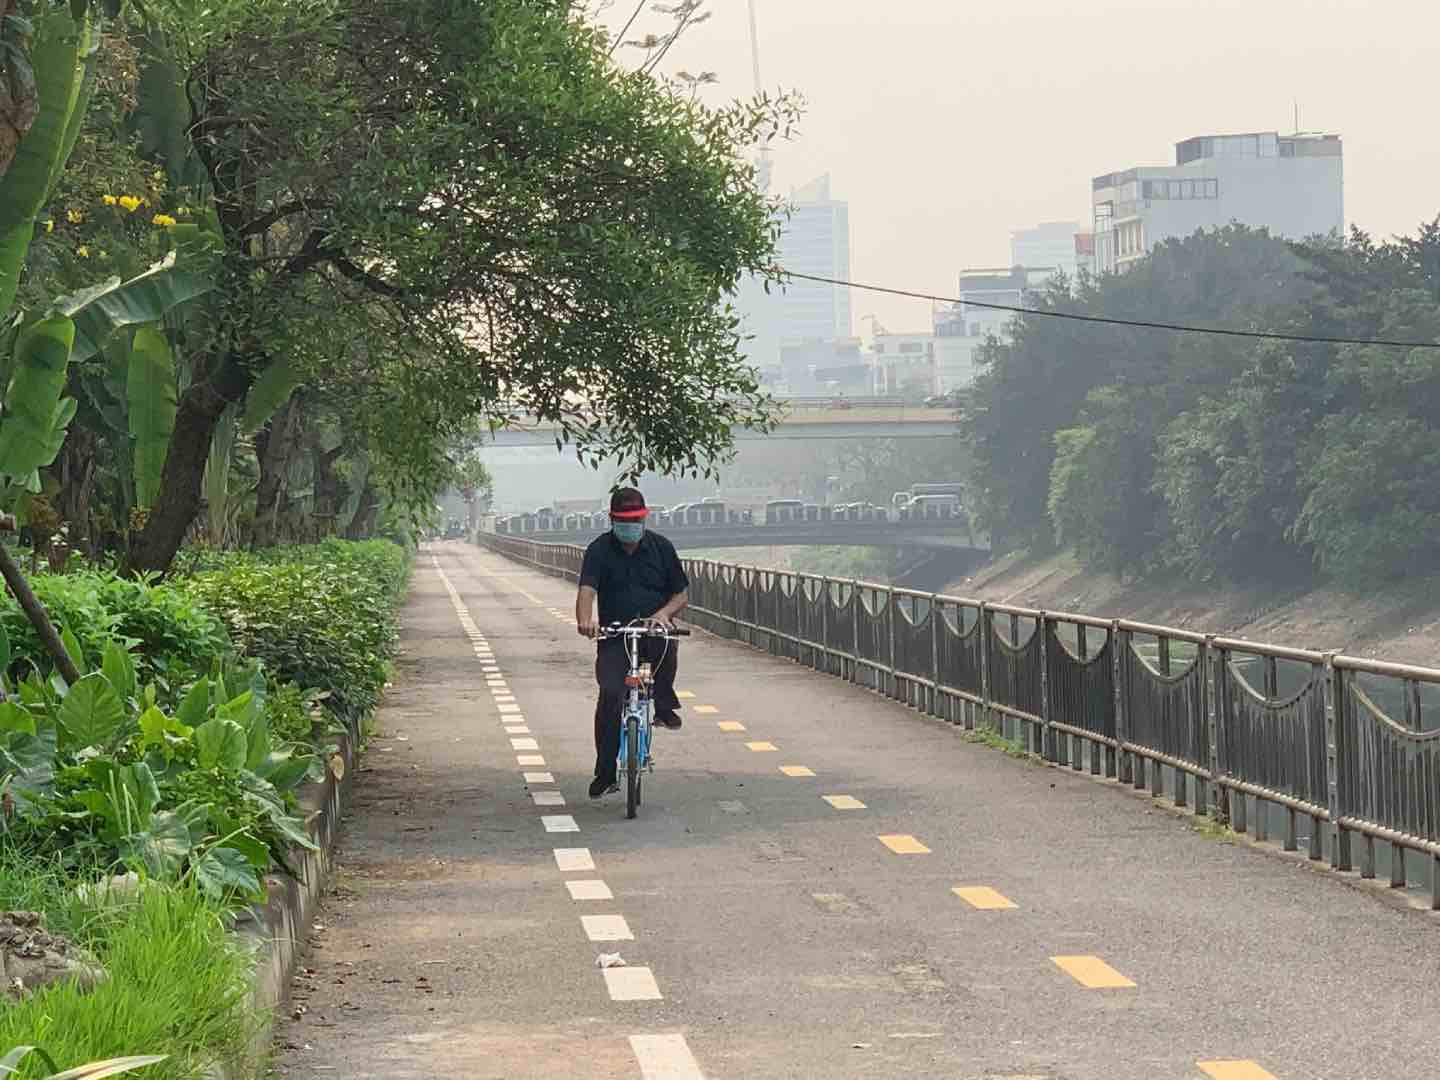 Thay rào chắn tại tuyến đường dành cho xe đạp ở Hà Nội